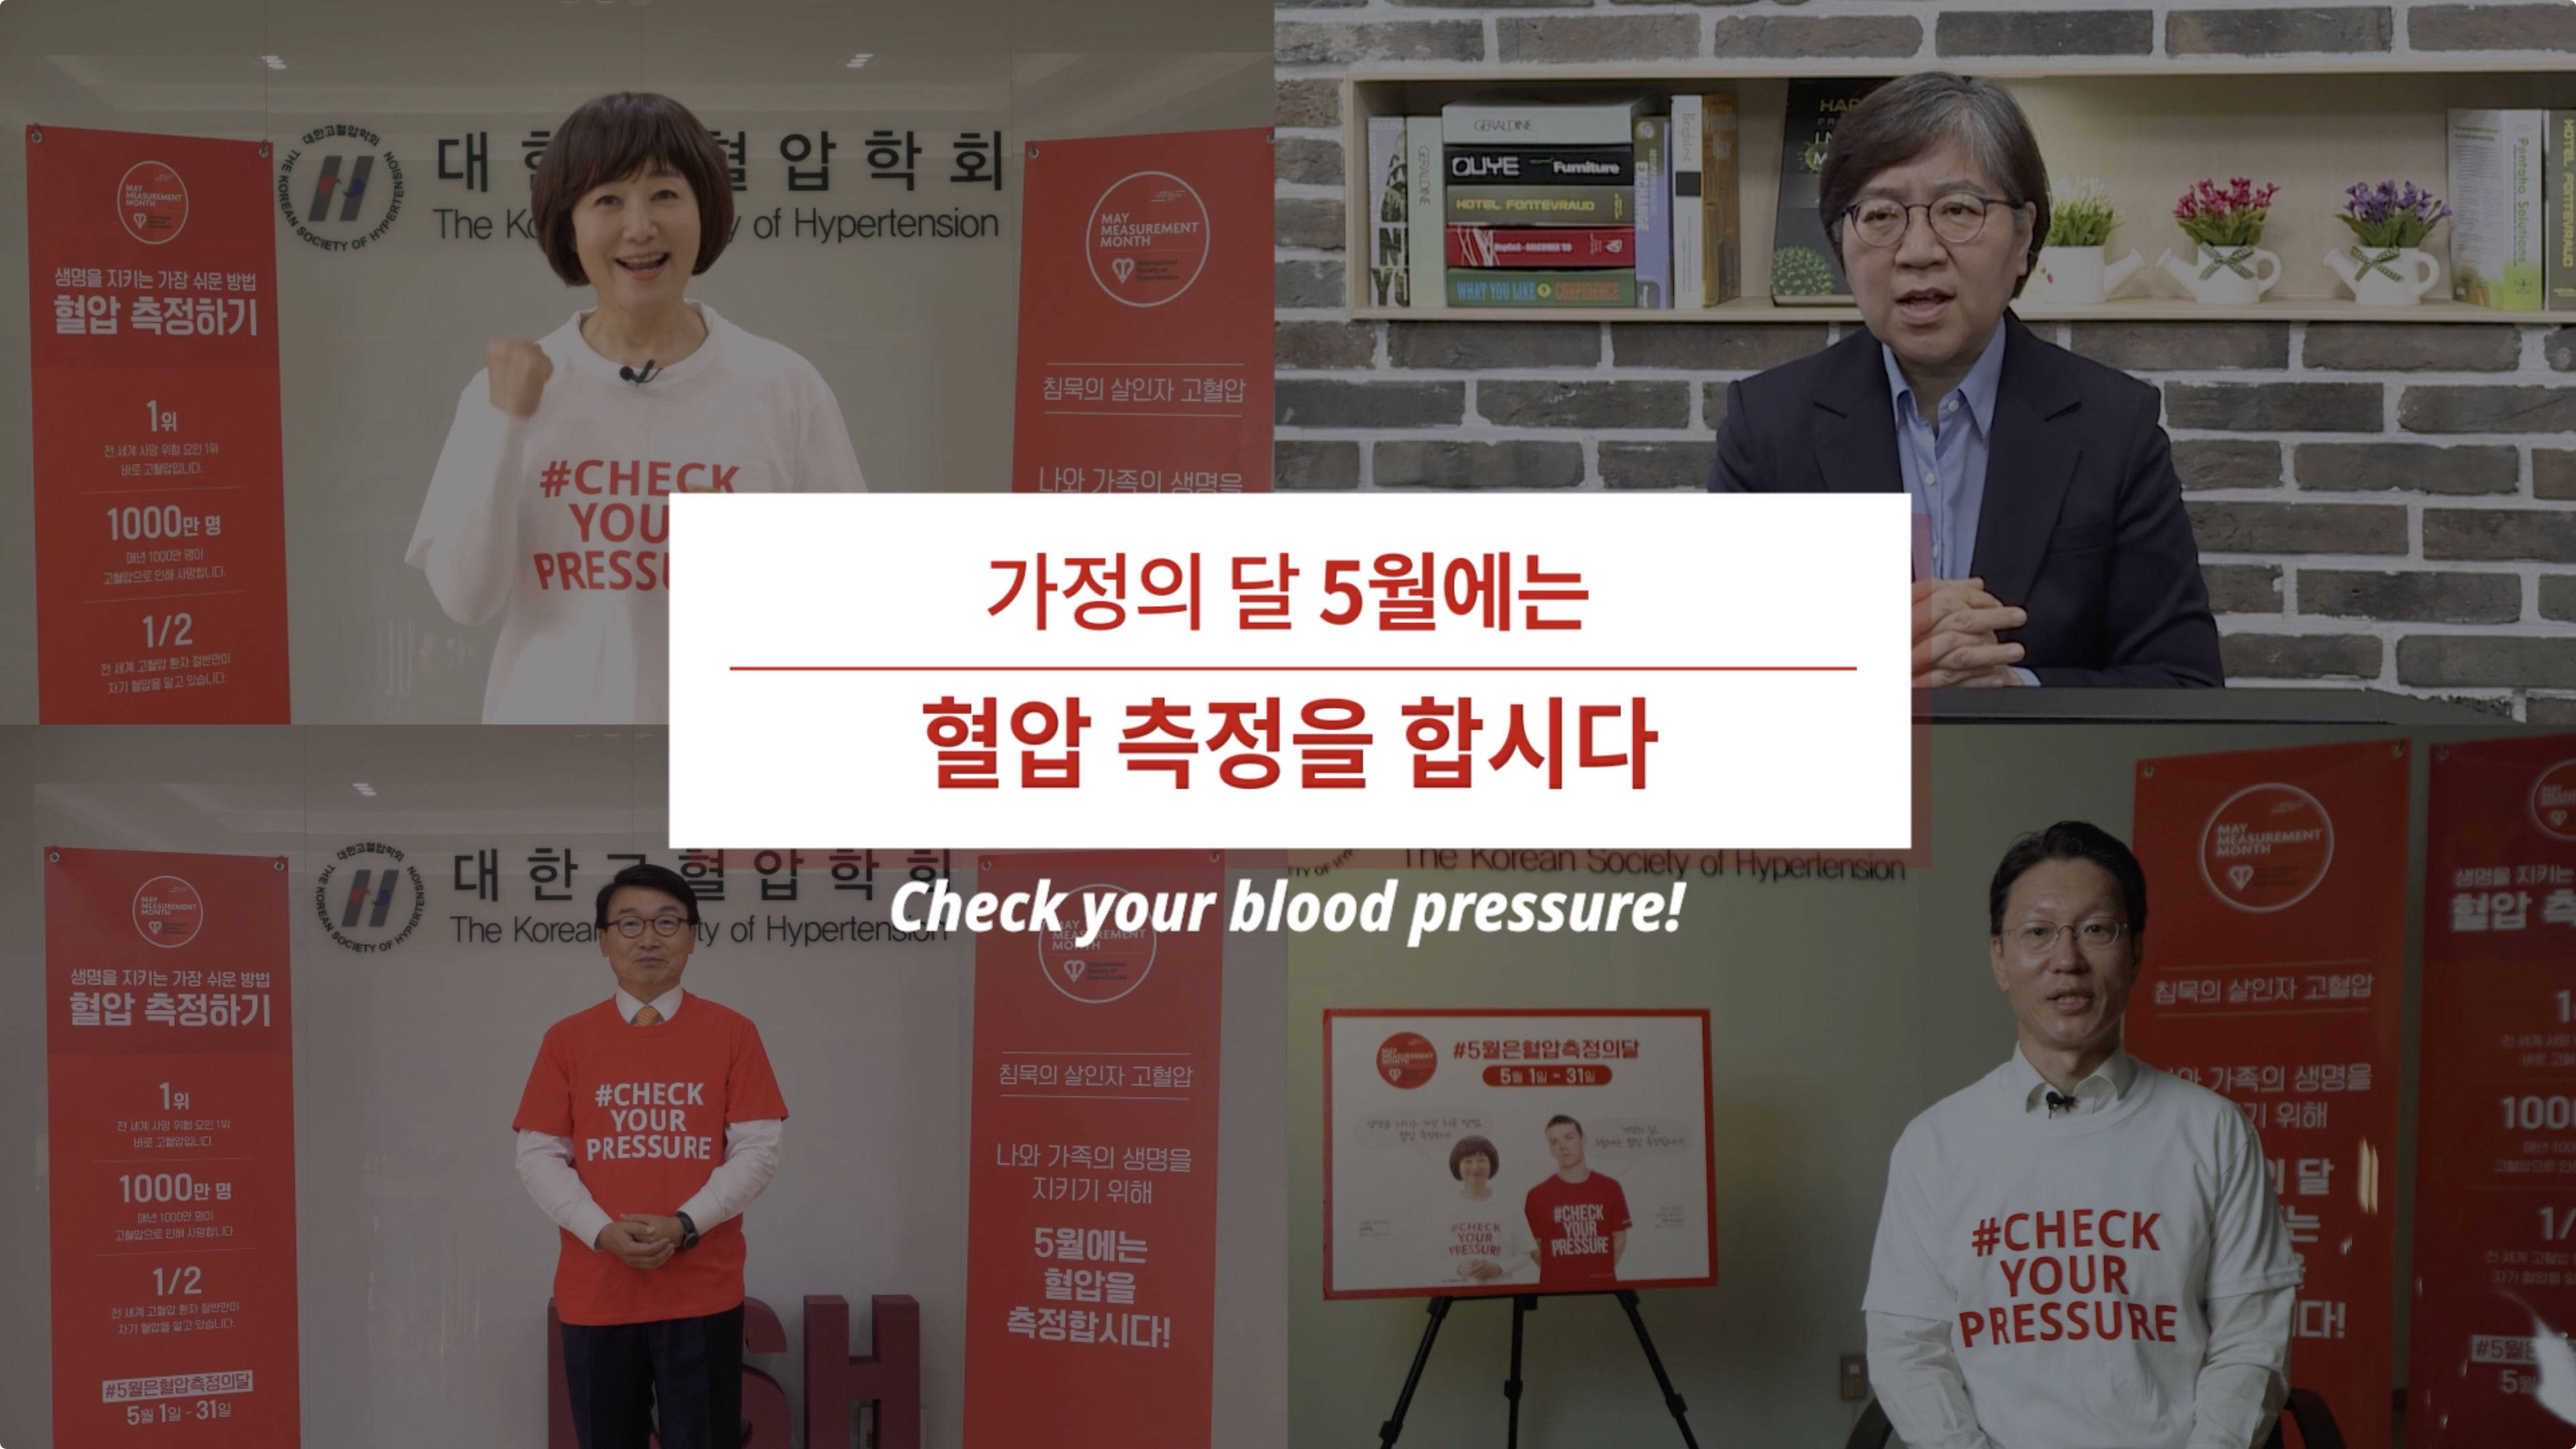 '5월은 혈압 측정의 달' 캠페인 릴레이 응원영상